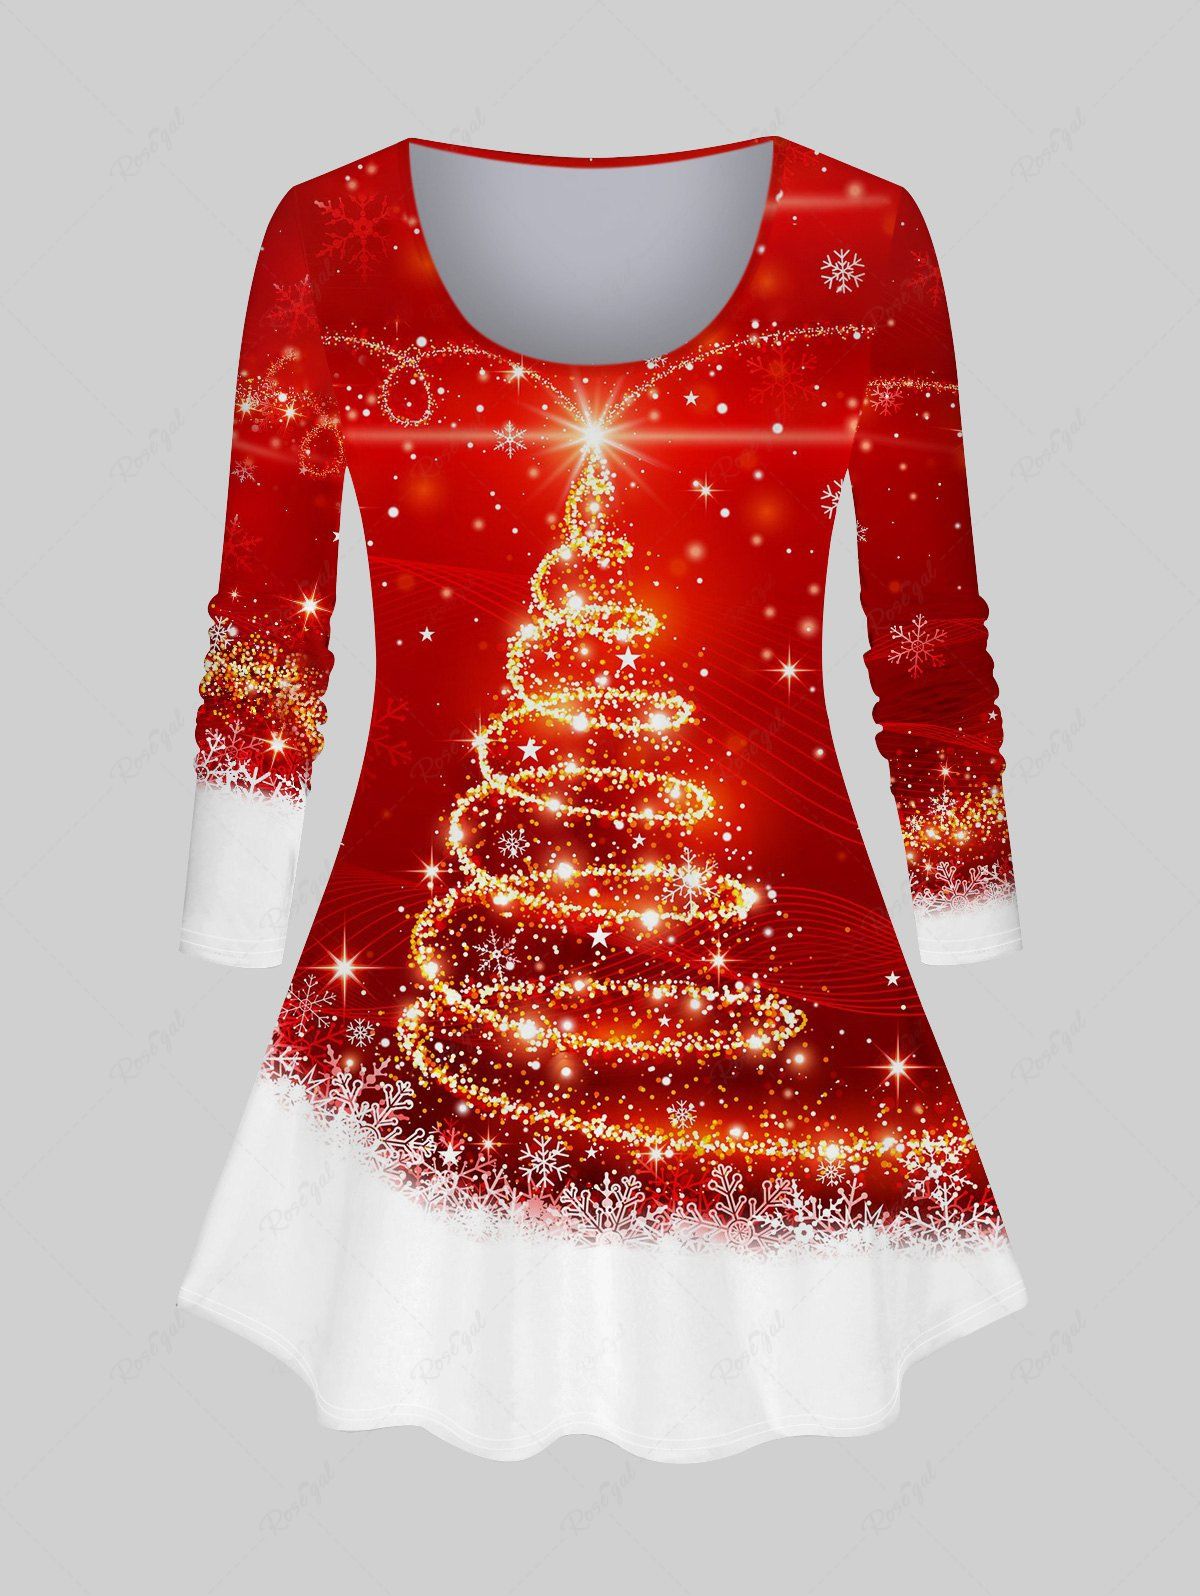 T-shirt Brillant Flocon de Neige et Sapin de Noël Imprimés de Grande Taille à Manches Longues Rouge 4X